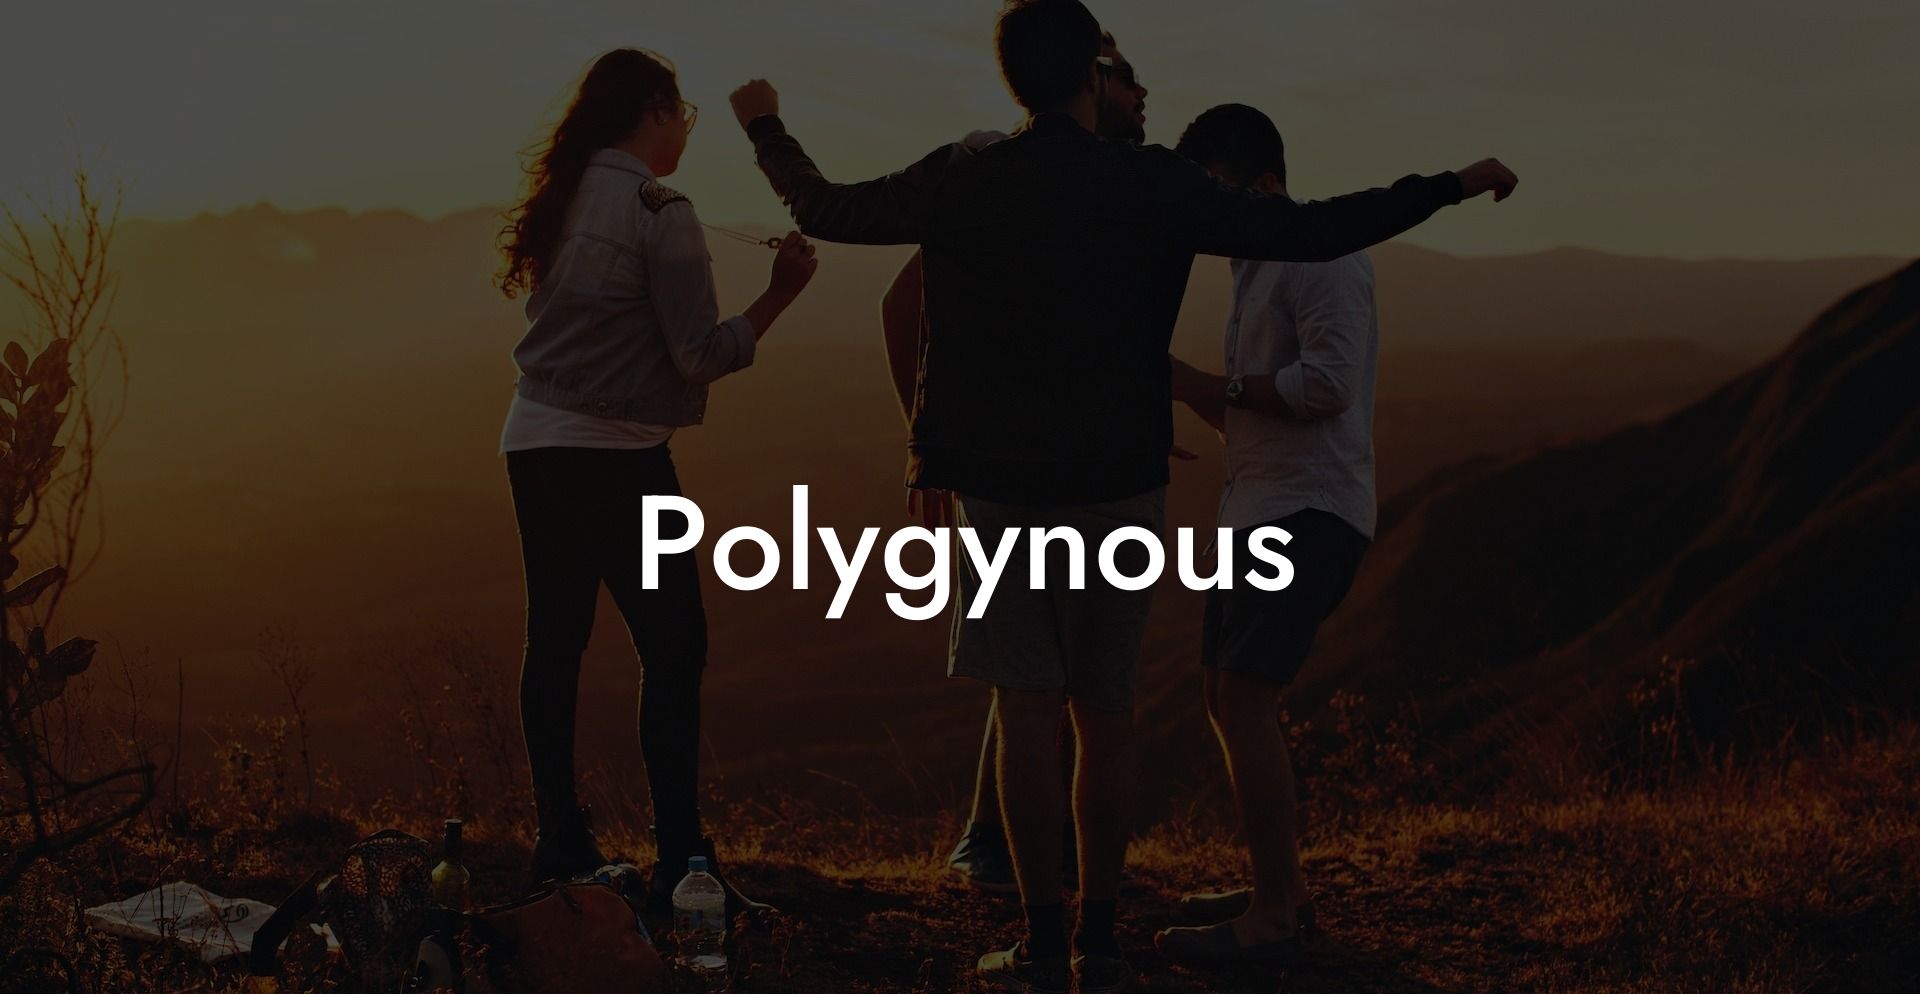 Polygynous